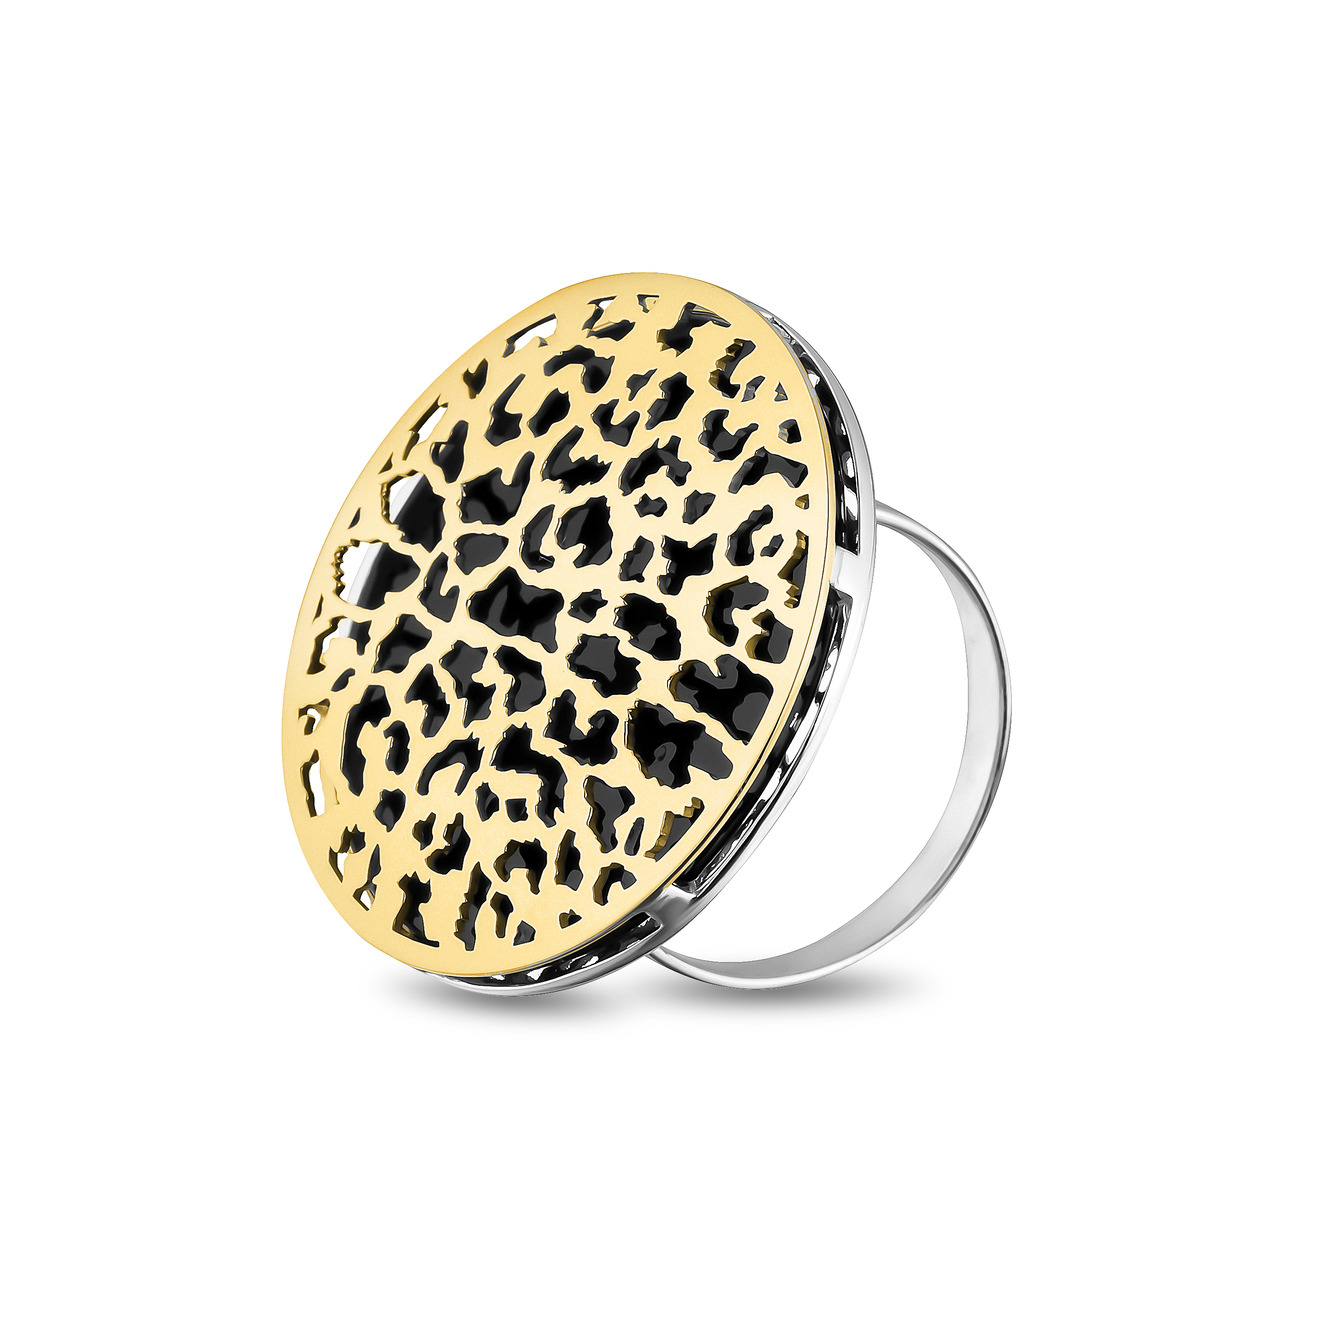 LUTA Jewelry Большое позолоченное кольцо из серебра c леопардовым узором luta jewelry позолоченное колье бантик из серебра с жемчугом